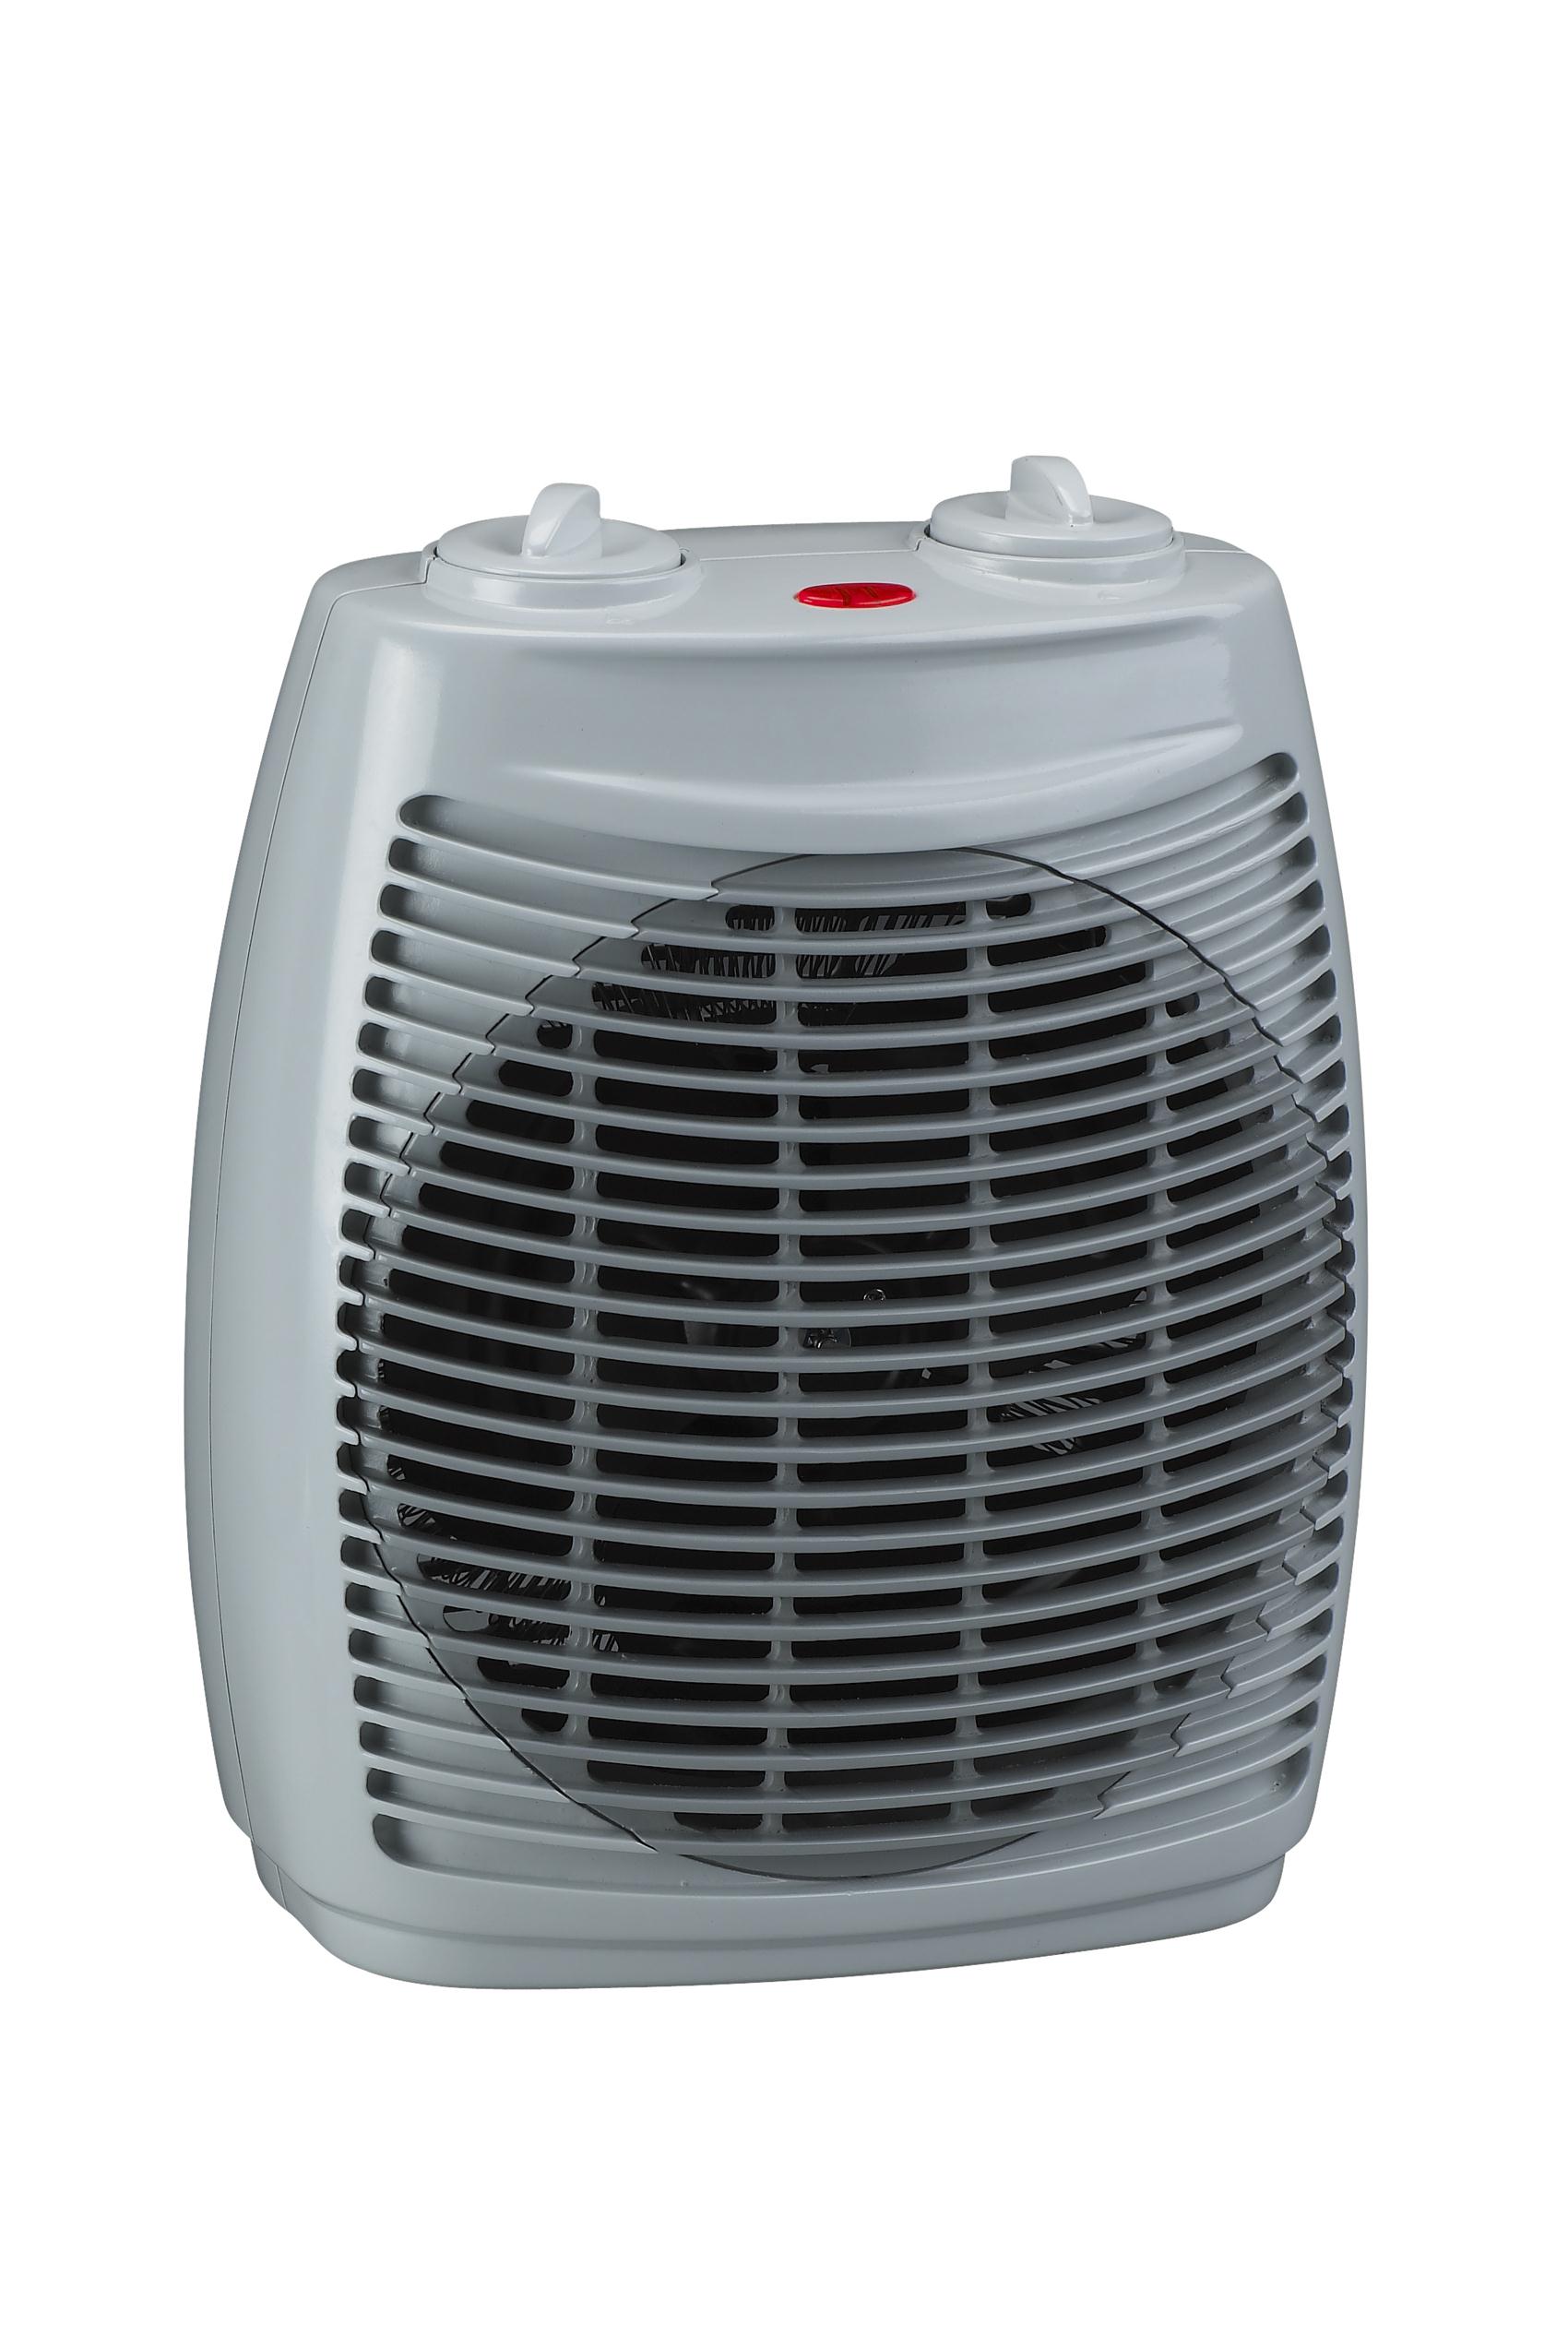 Fan Heater,The heating wire heater